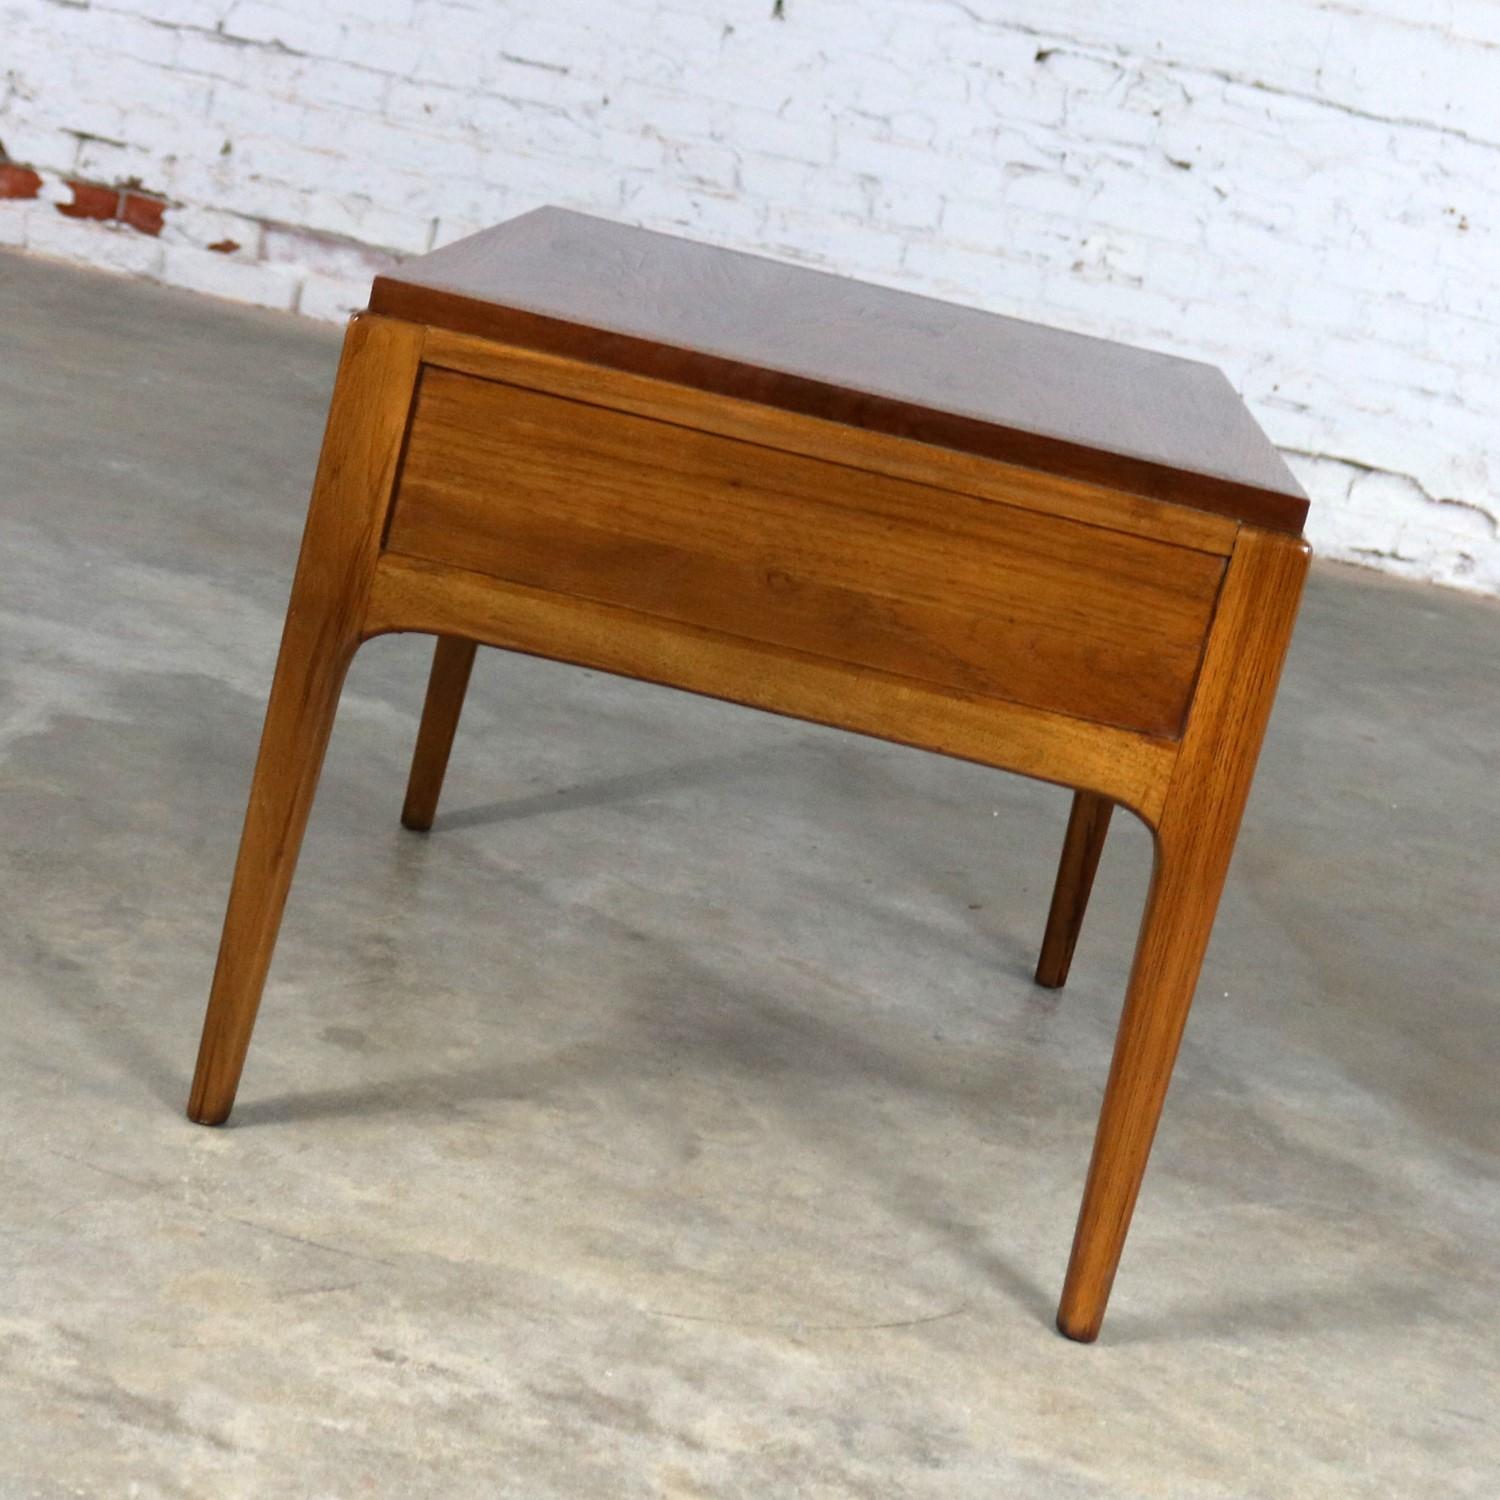 American Lane Rhythm Walnut End Table with Drawer Mid-Century Modern